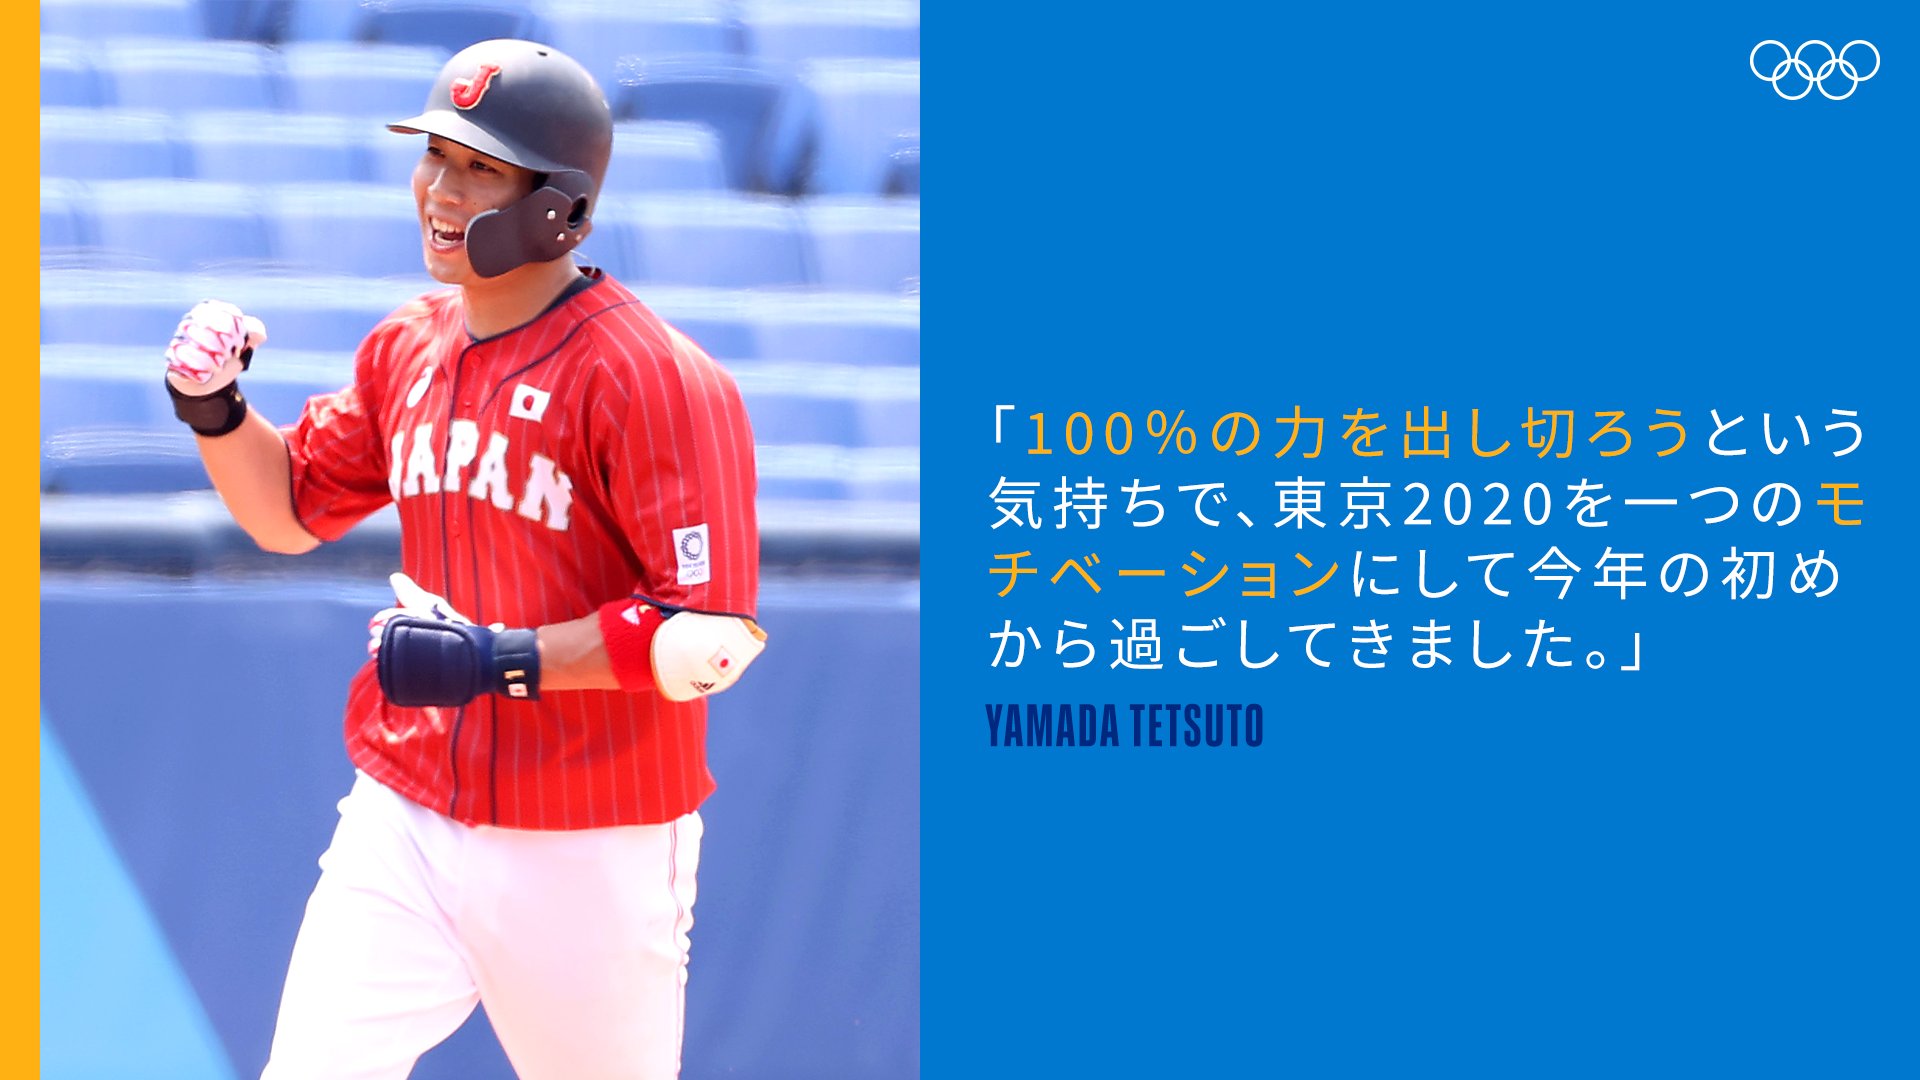 オリンピック 金メダルのために チームに貢献する 山田哲人選手 100 の力を出し切ろうという気持ちで 東京を一つのモチベーションにして今年の初めから過ごしてきました Tokyojp Tokyo 山田哲人 オリンピック名言 野球